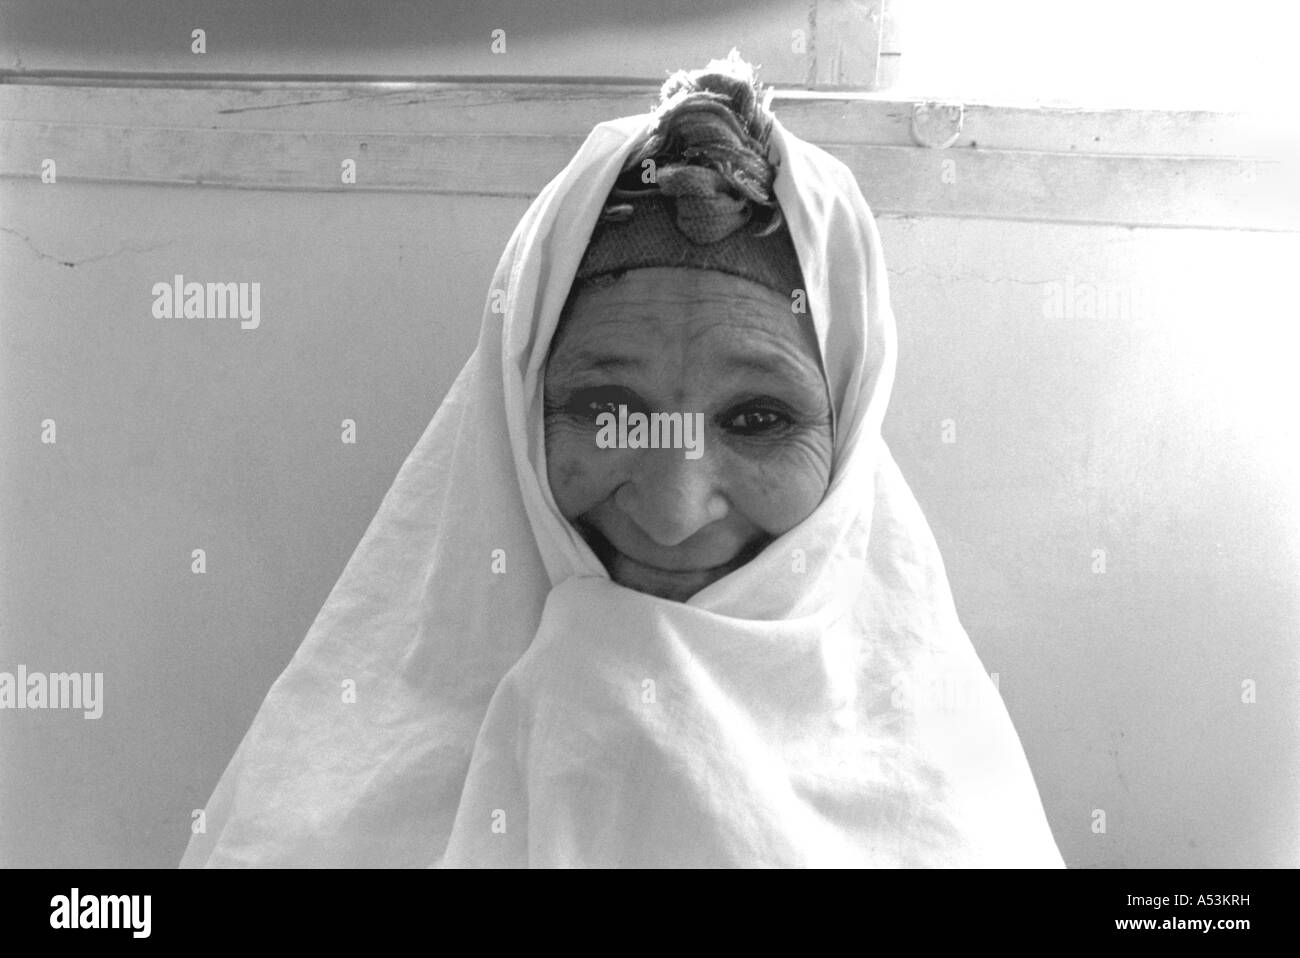 Painet ha1311 111 in bianco e nero donne anziane islam donna bou saada algeria paese nazione in via di sviluppo meno economicamente Foto Stock